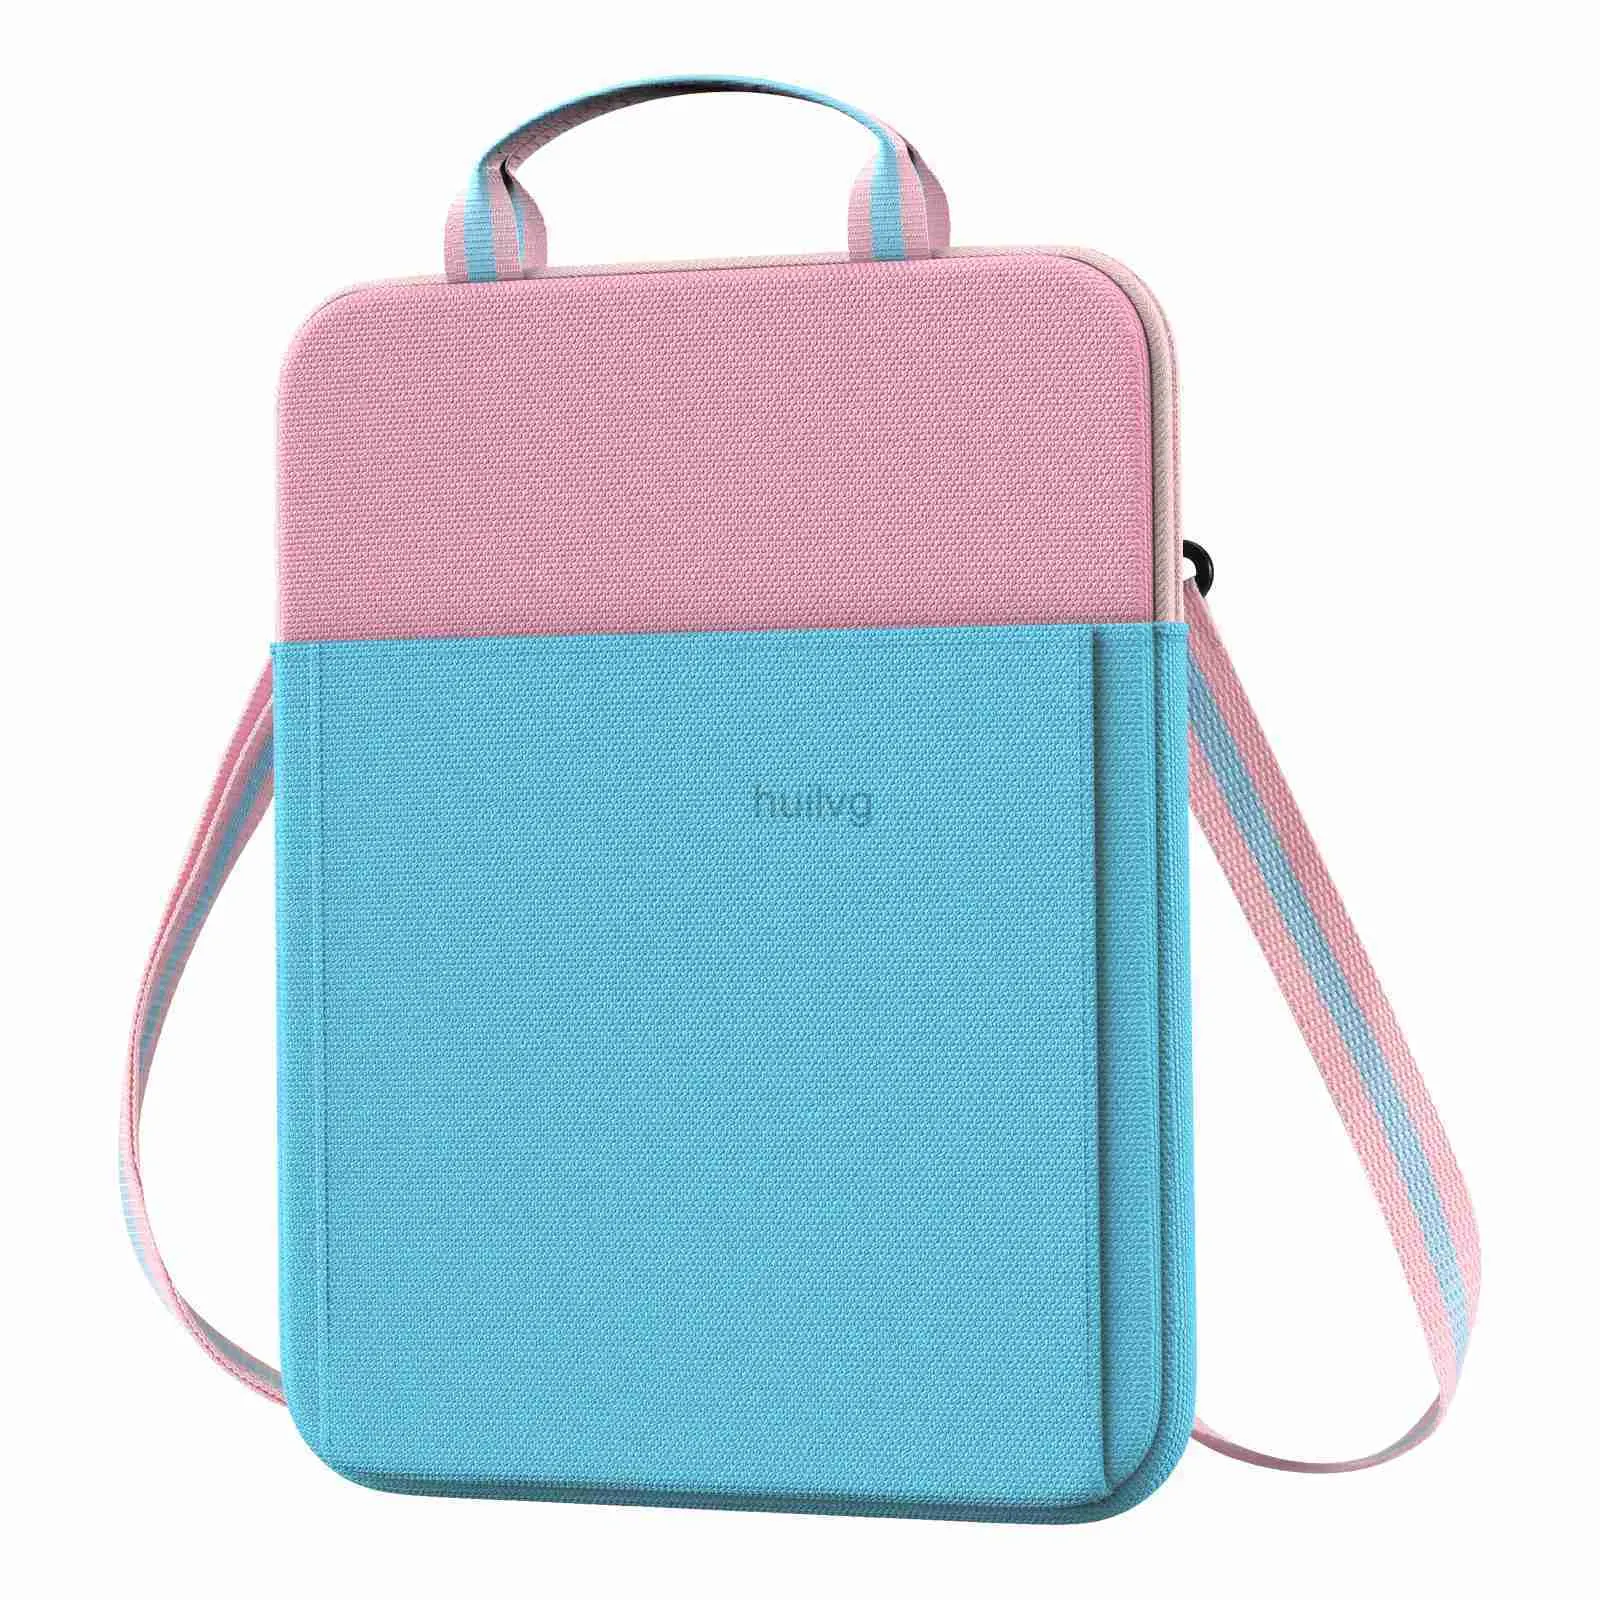 Laptoptaschen Rucksack Hülle Tasche 9 10 11 Zoll Abdeckung für MacBook Air 11,6 Zoll iPad 10. Generation Pro11 5 4 10.2 Galaxy Tab S6 Lite 24328